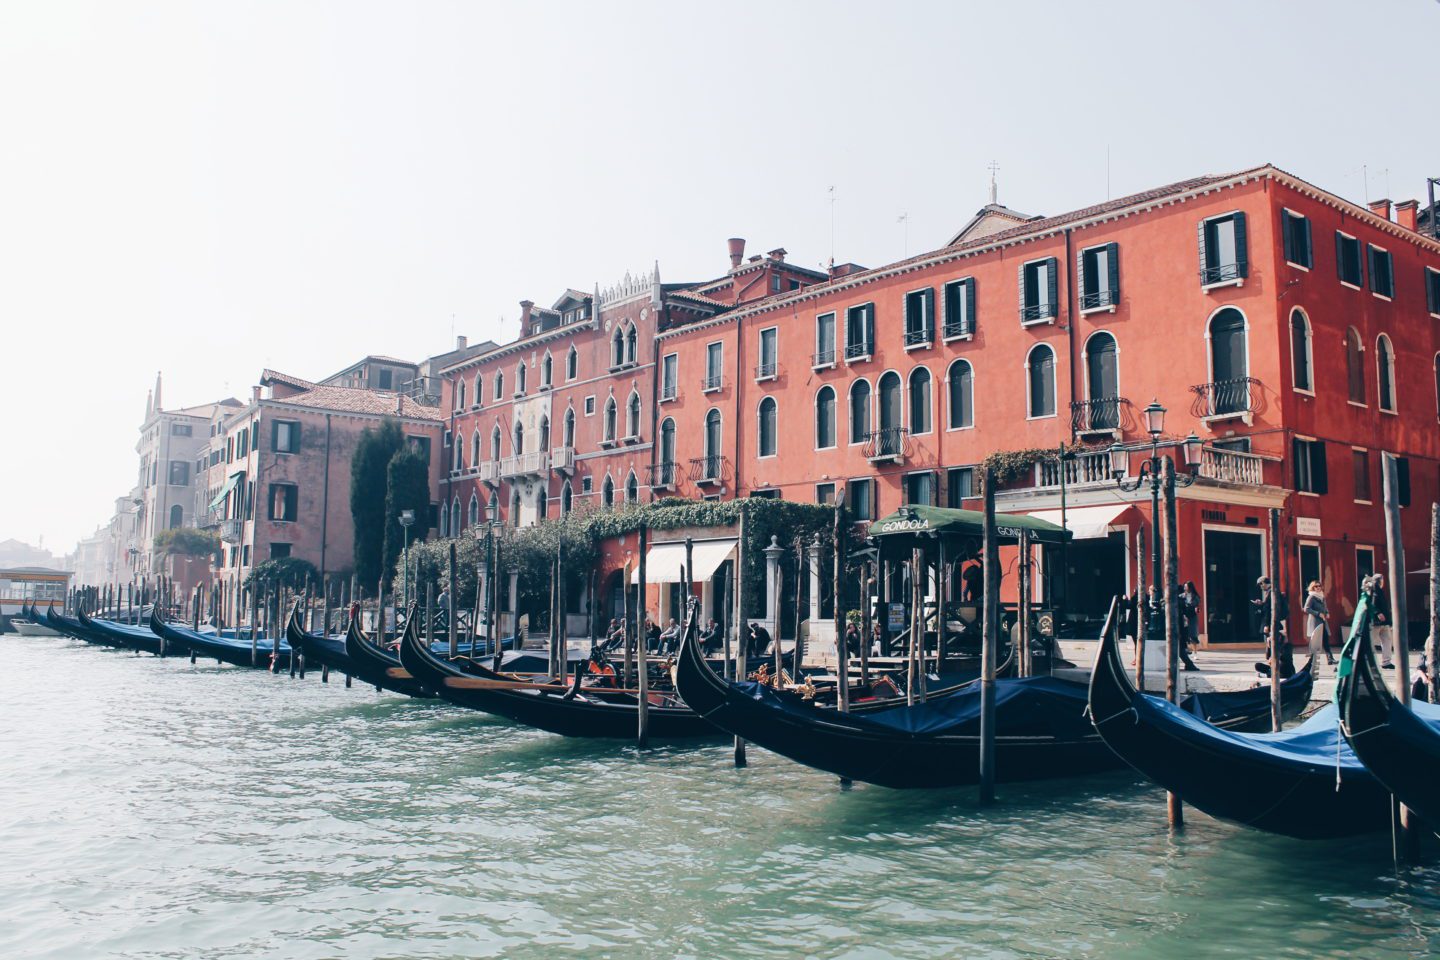 Venice 2016